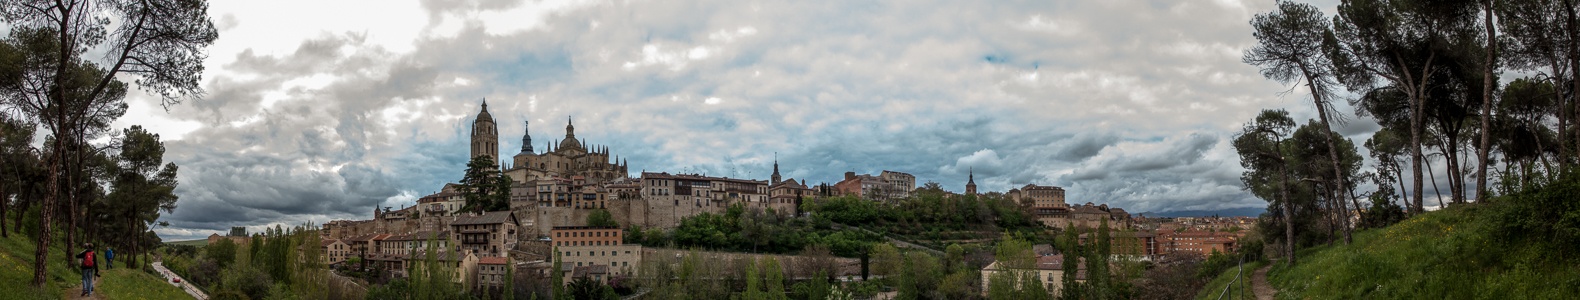 Centro Histórico mit der Catedral de Santa María de Segovia Valle del Clamores